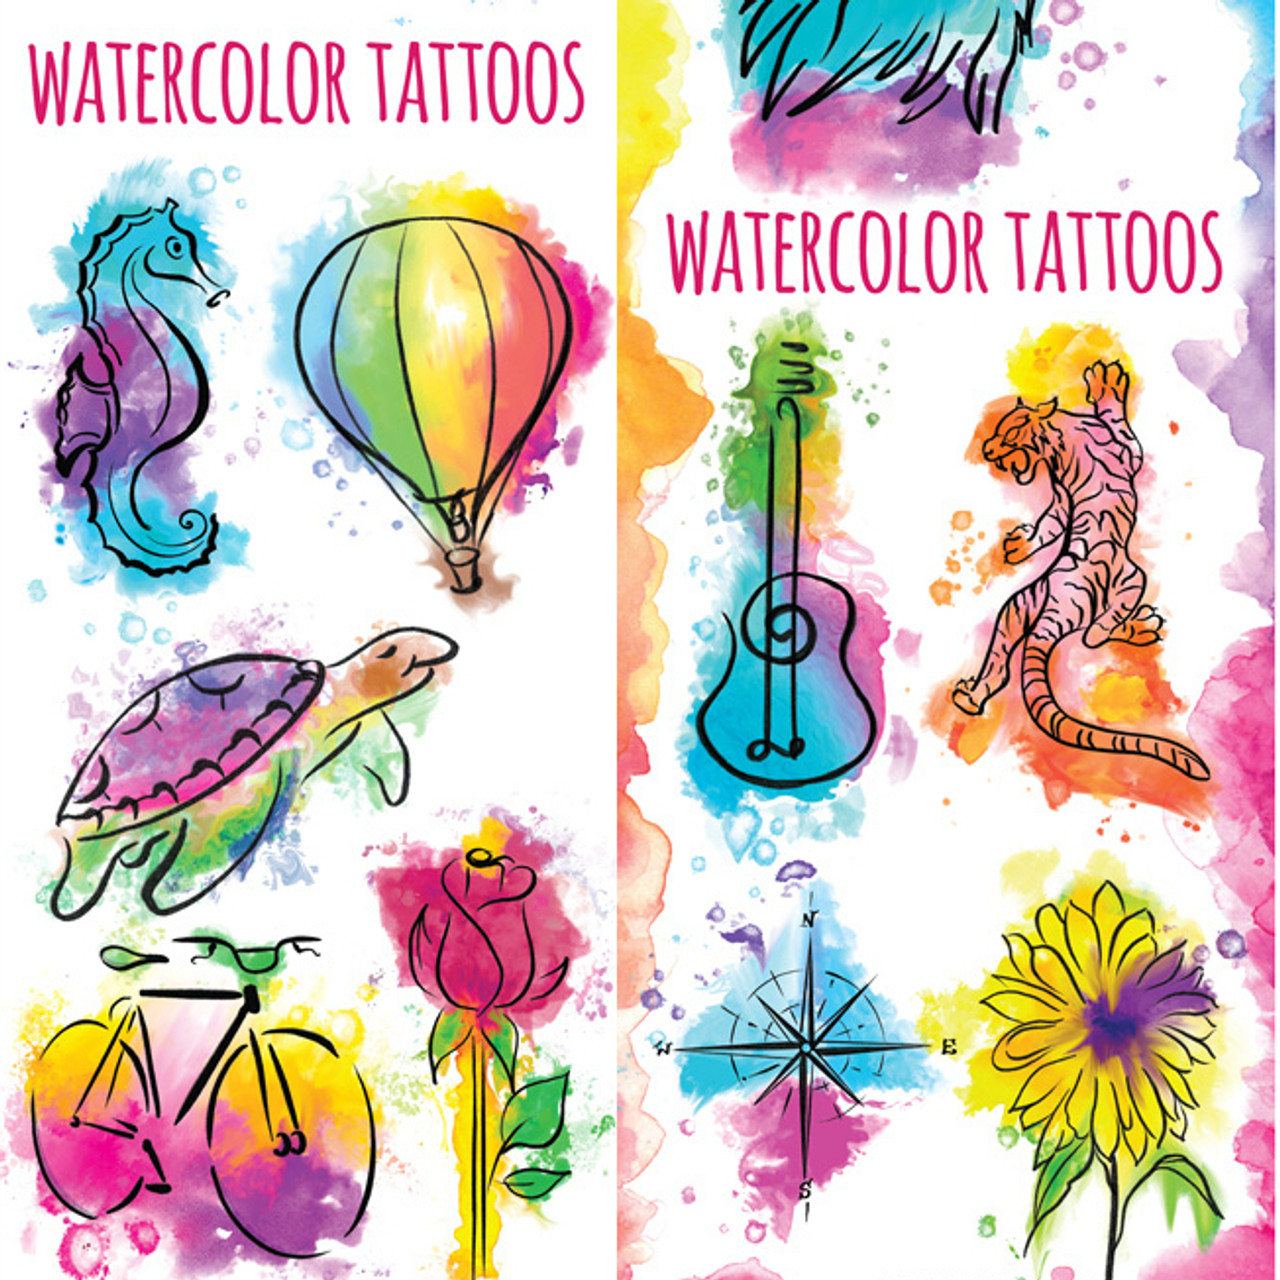 Marina's Tattoos